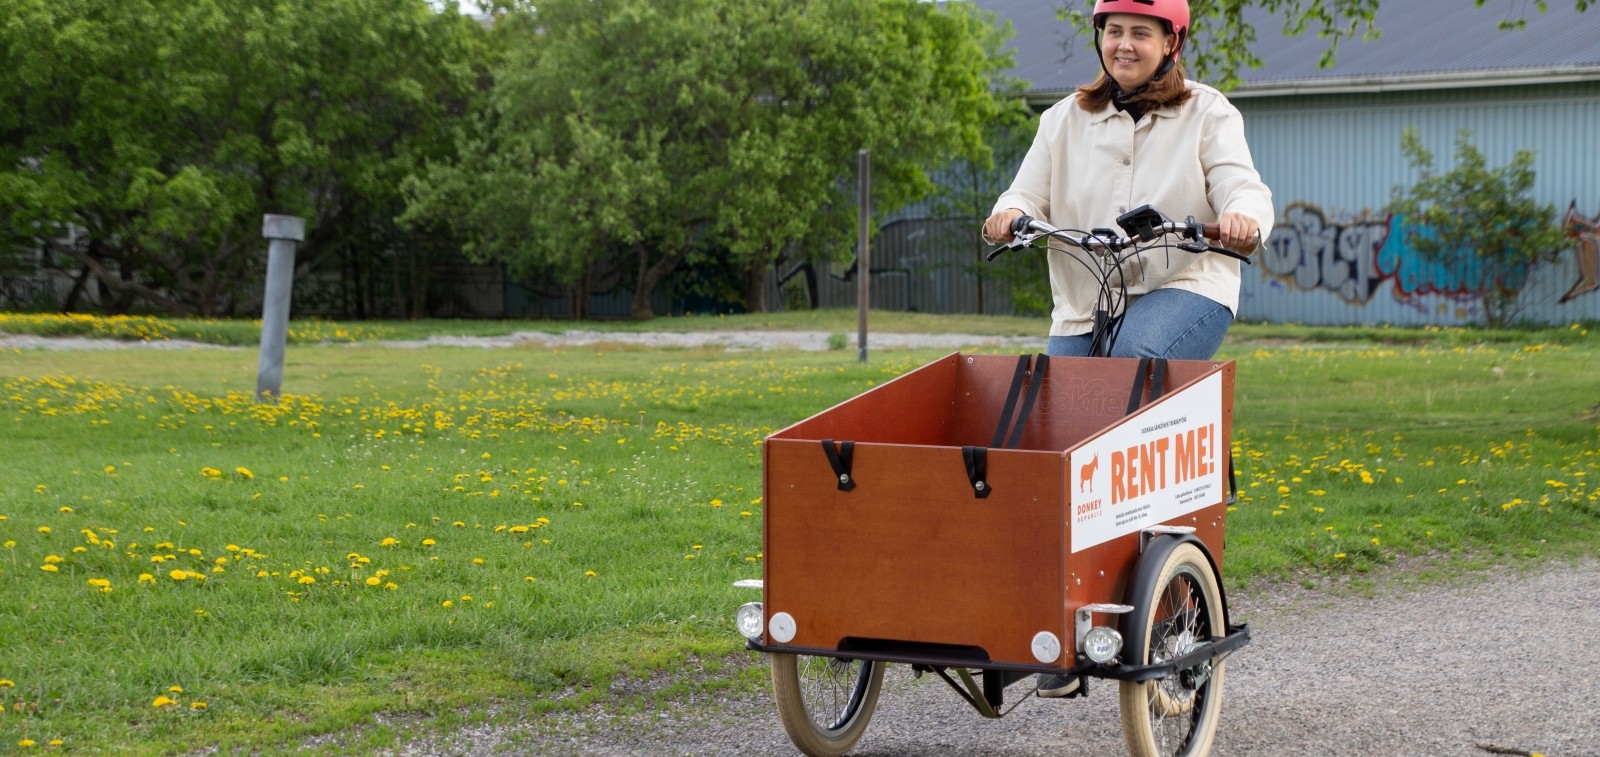 Nainen pyöräilee laatikkopyörällä alkukesän vehreyden keskellä